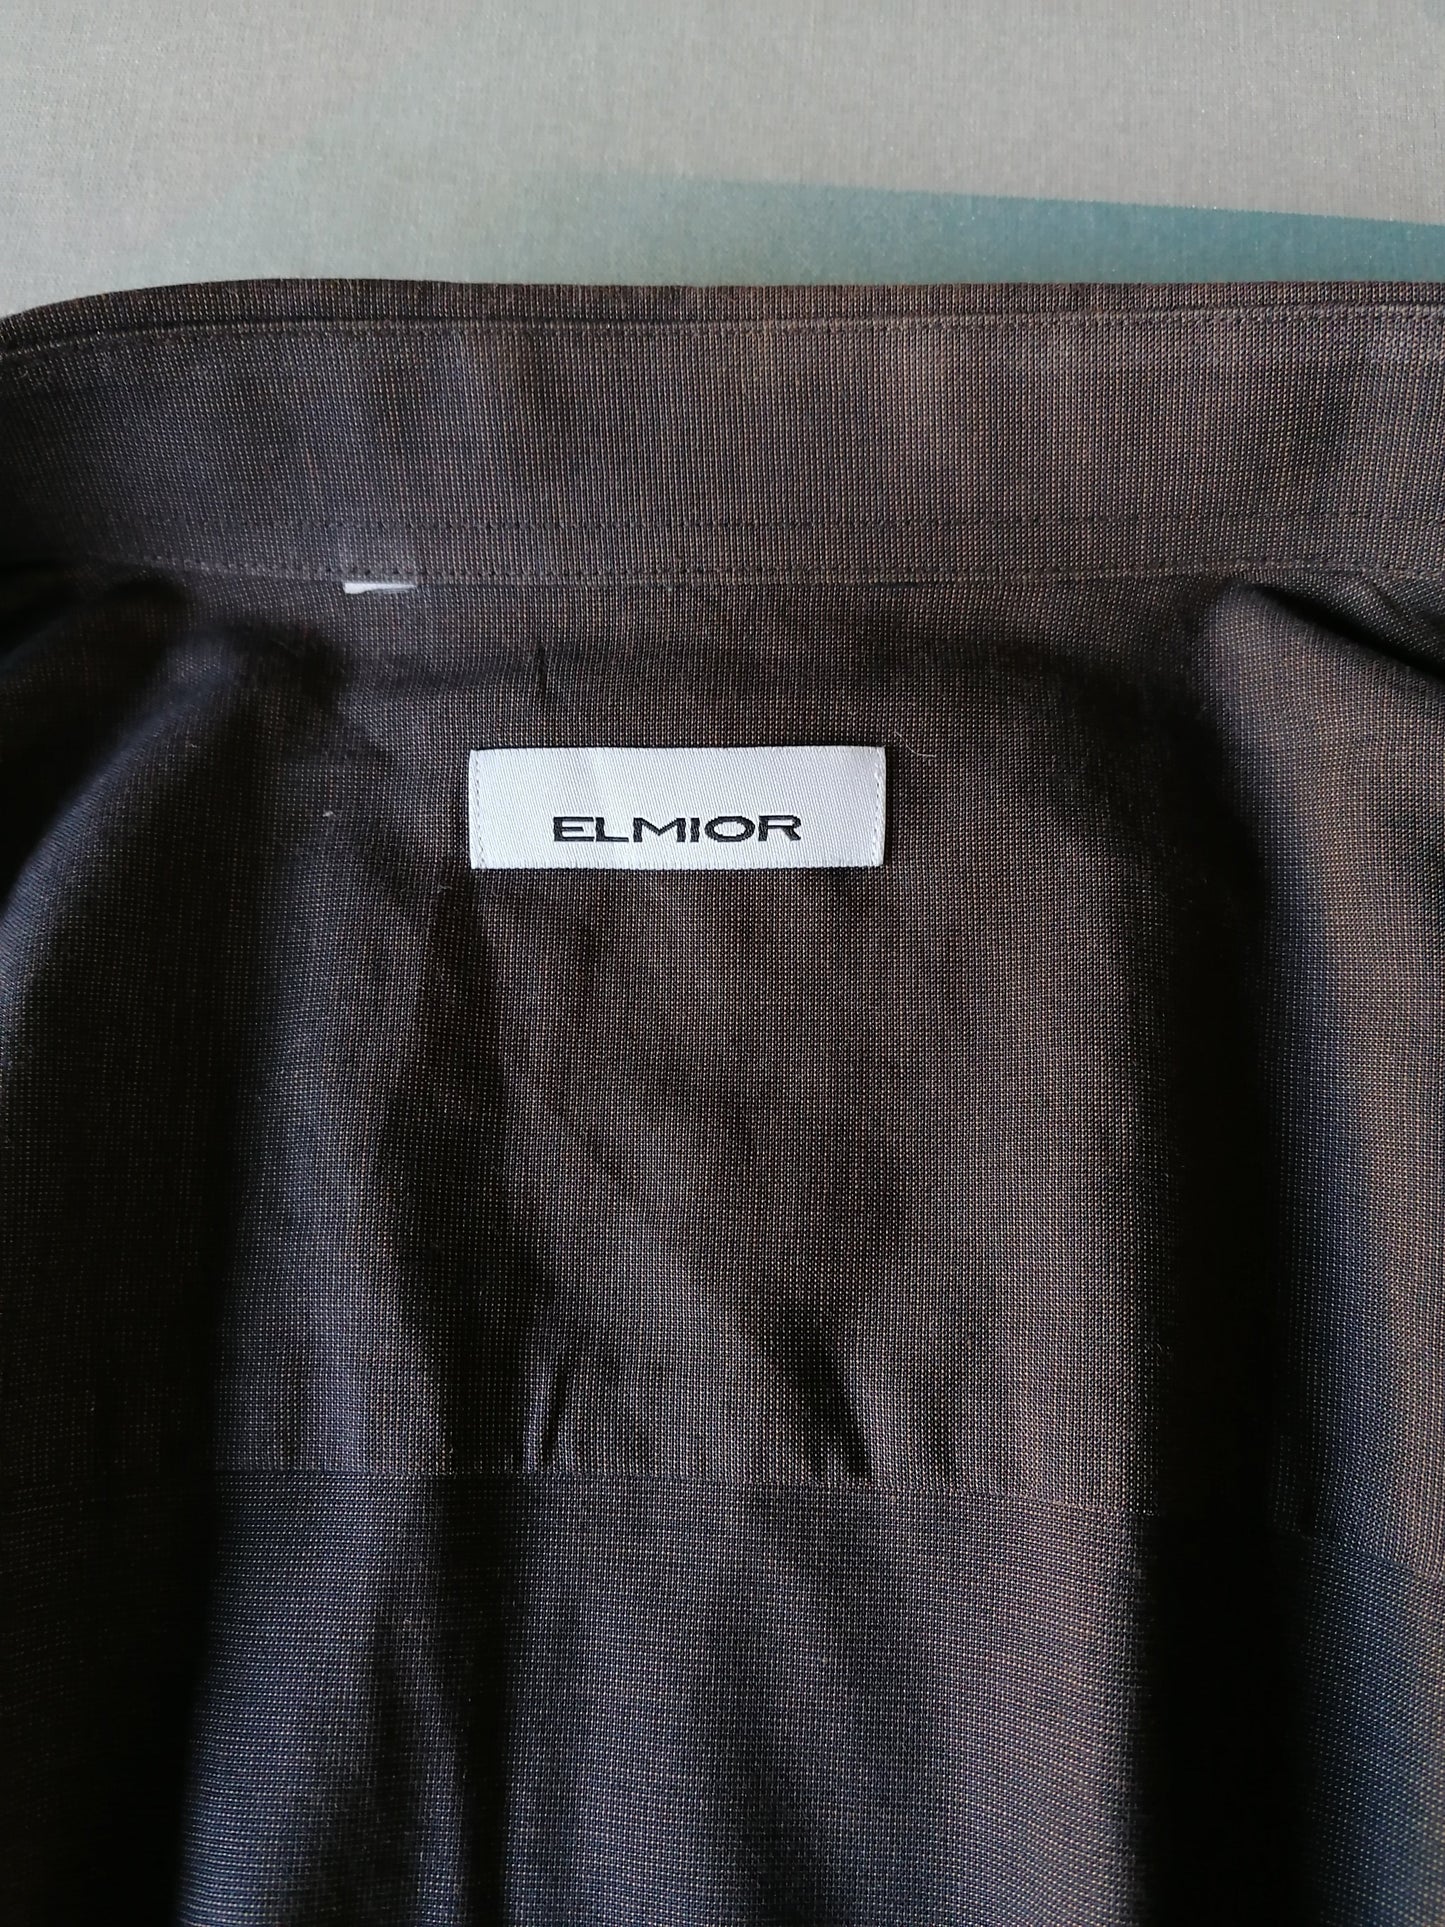 Elmior overhemd. Bruin Zwart motief. Maat XL